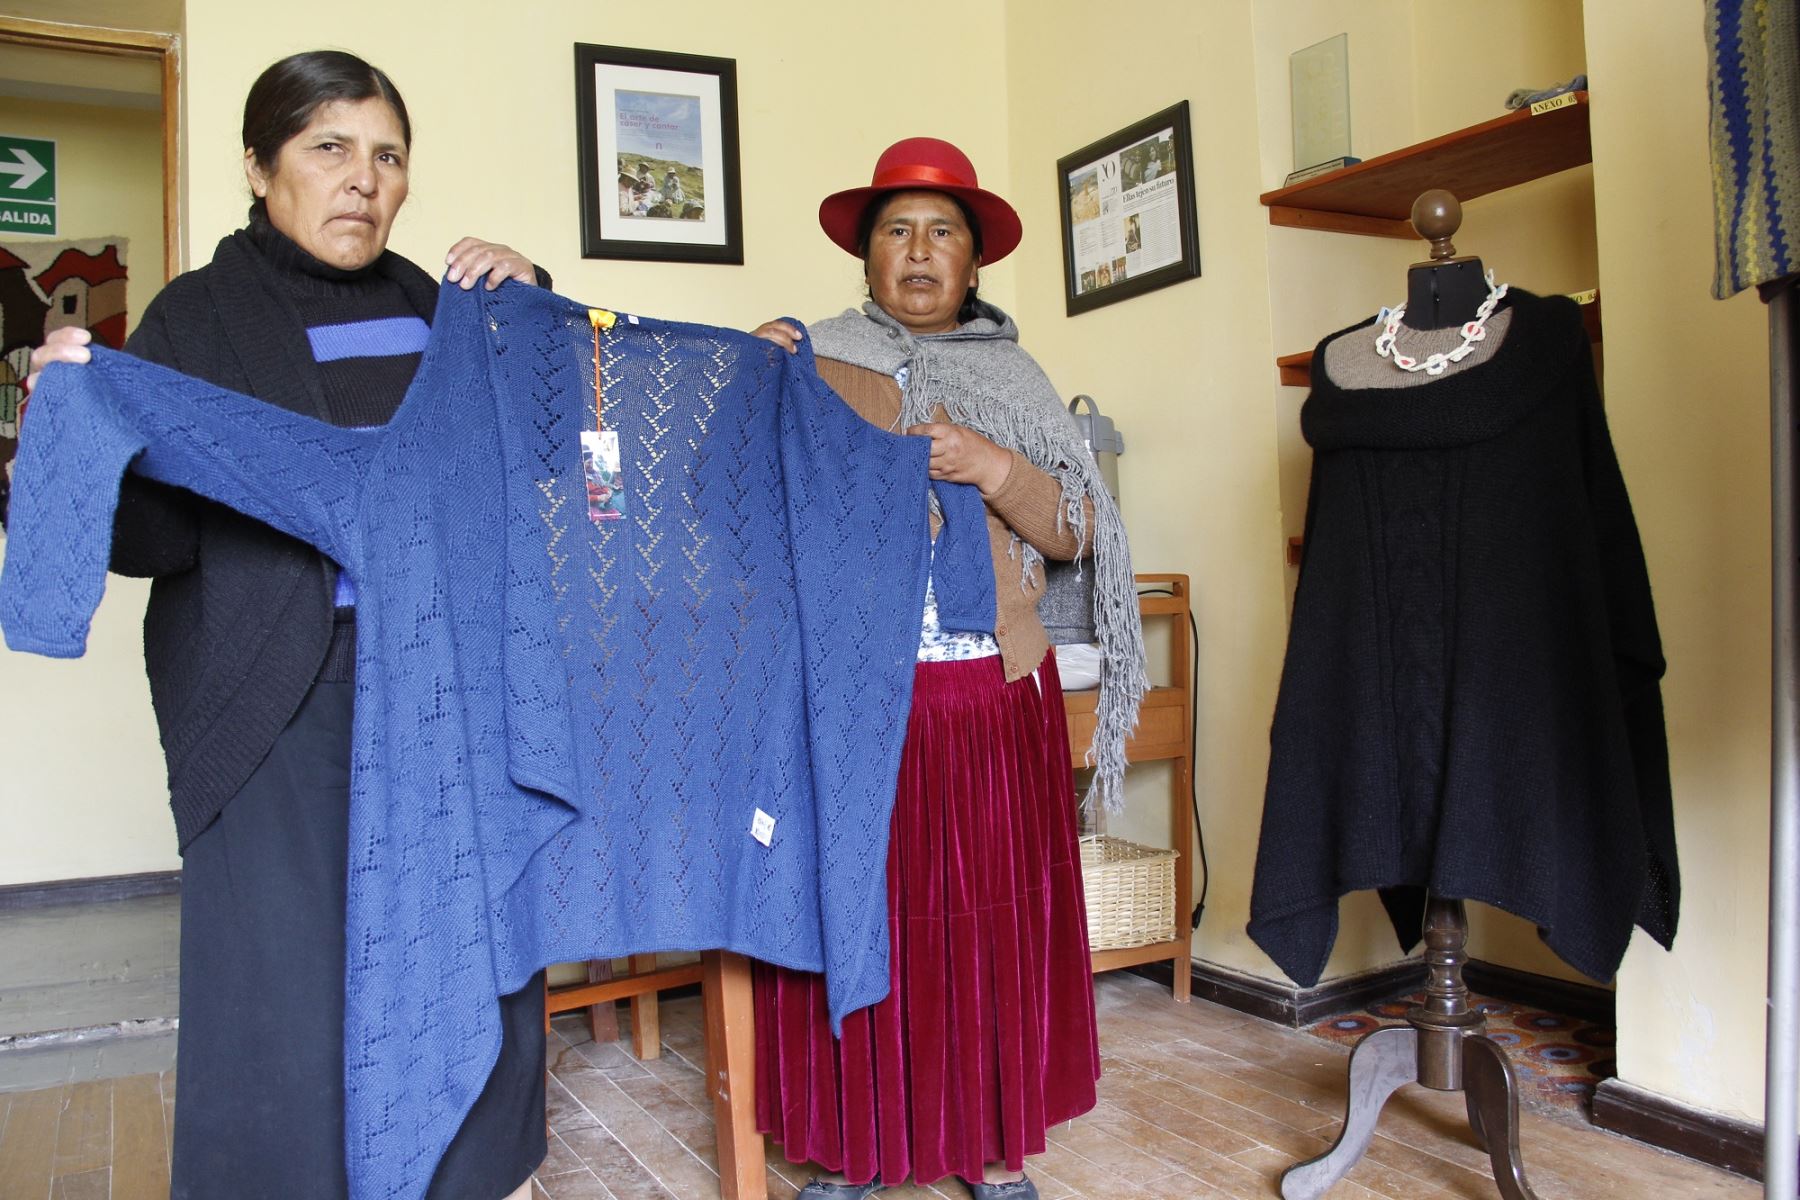 Tejidos hechos a mano elaborados por mujeres artesanas de Puno conquistan mercados de América y Europa. ANDINA